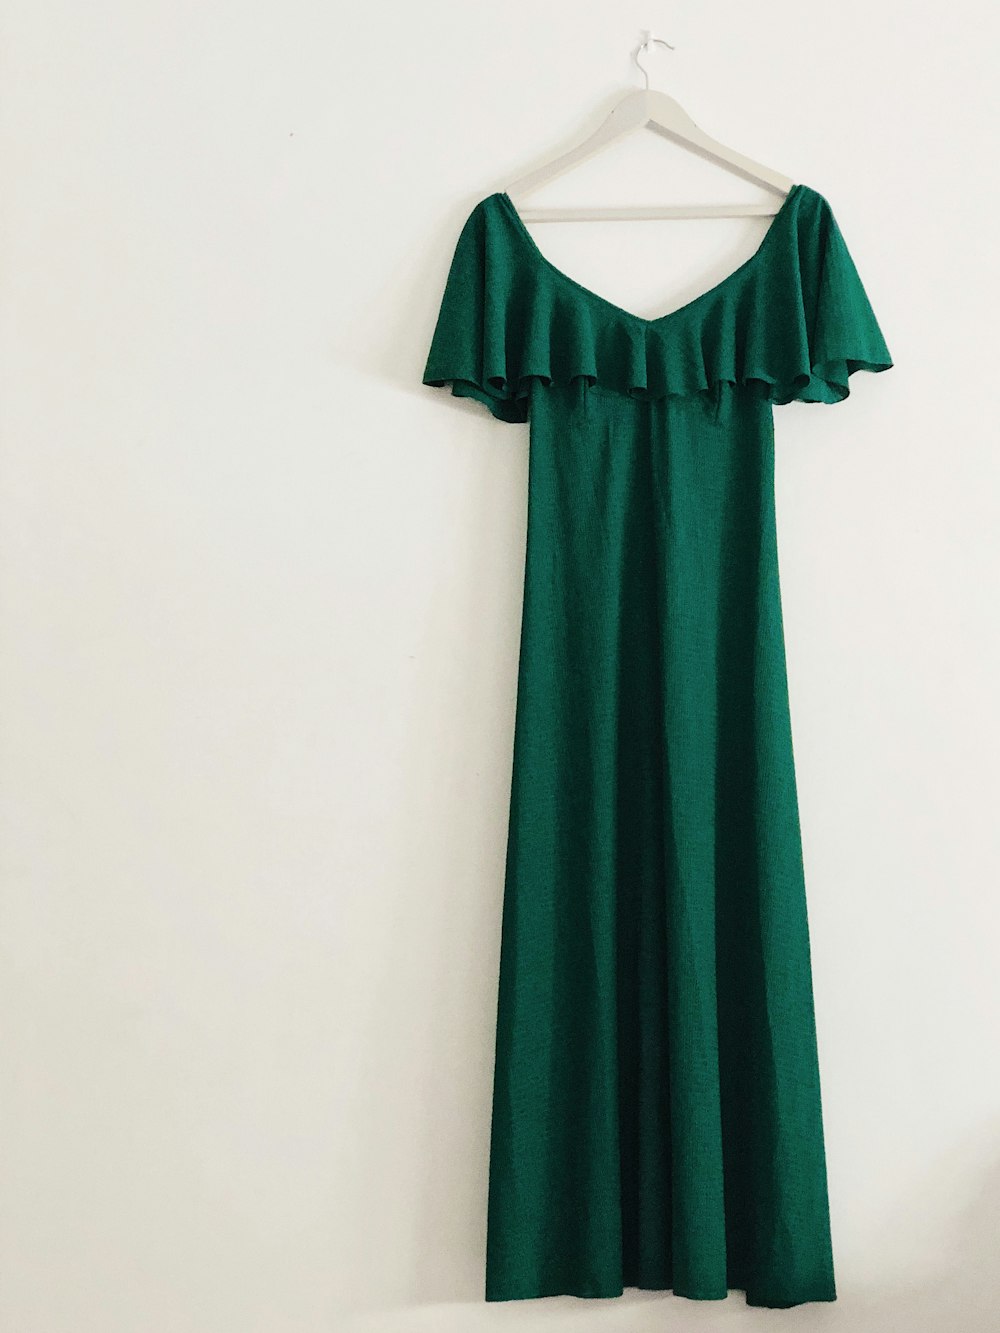 robe verte sans manches accrochée sur un mur blanc